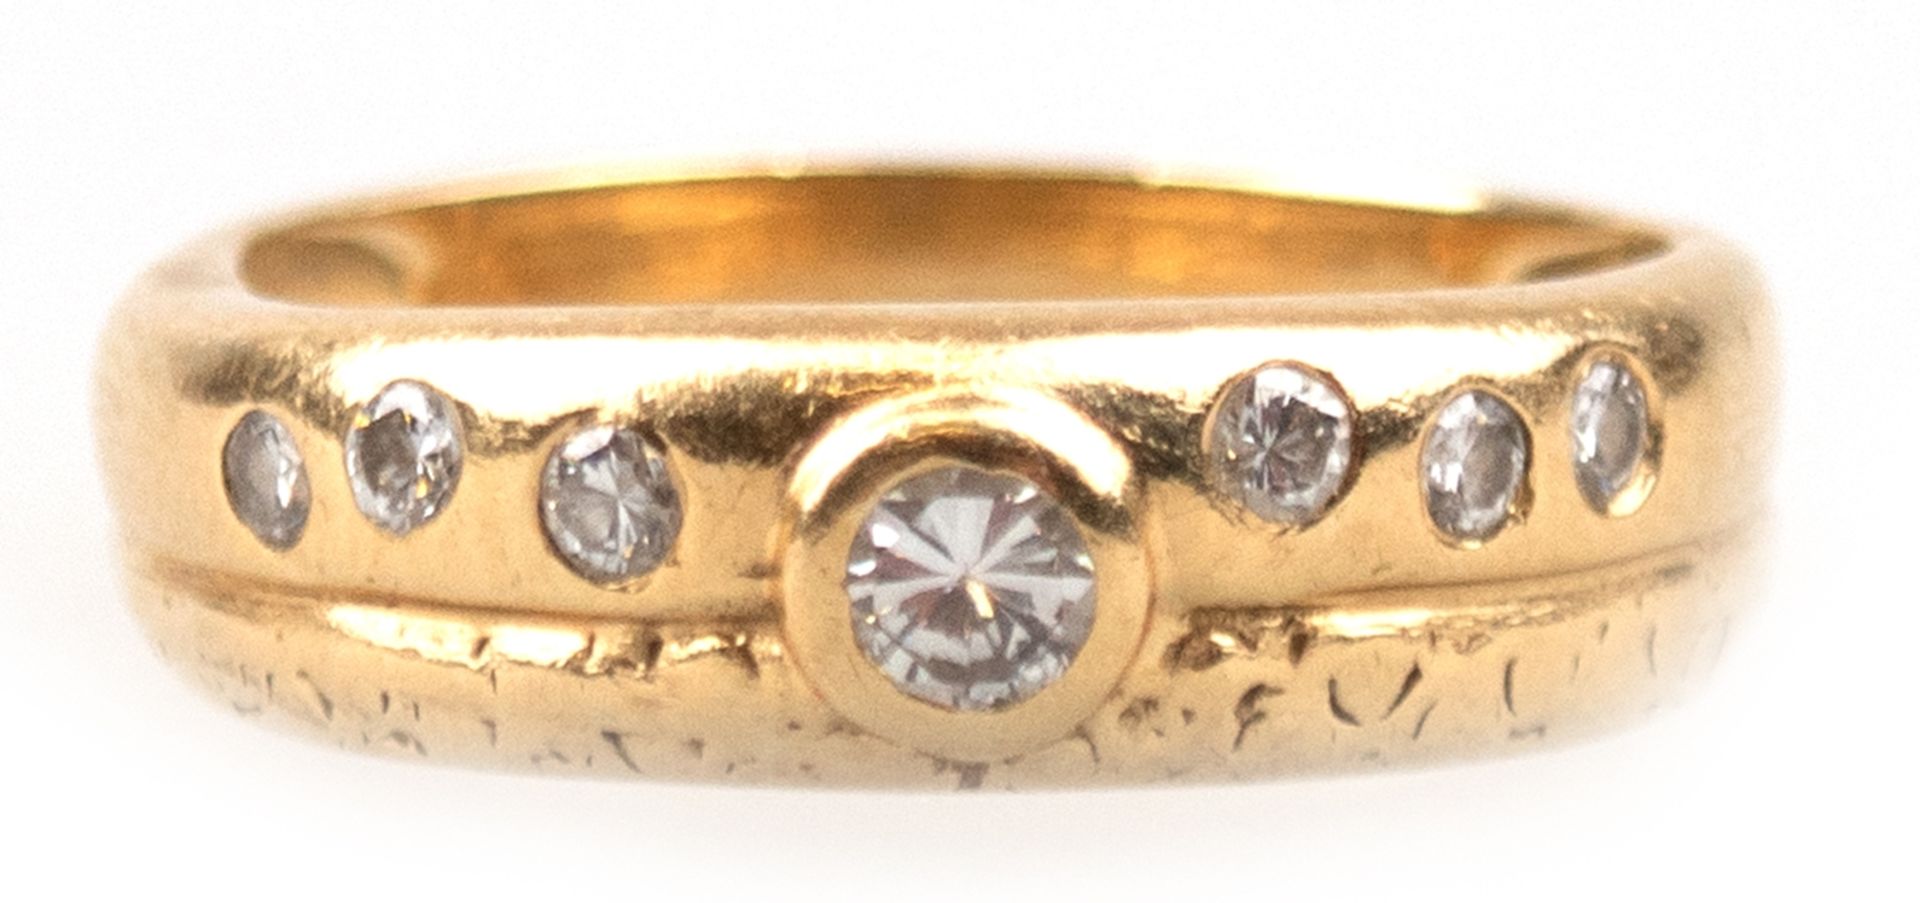 Ring, 585er GG, ges. 4,48 g, besetzt mit 7 Brillanten von zus. 0,28 ct., RG 54